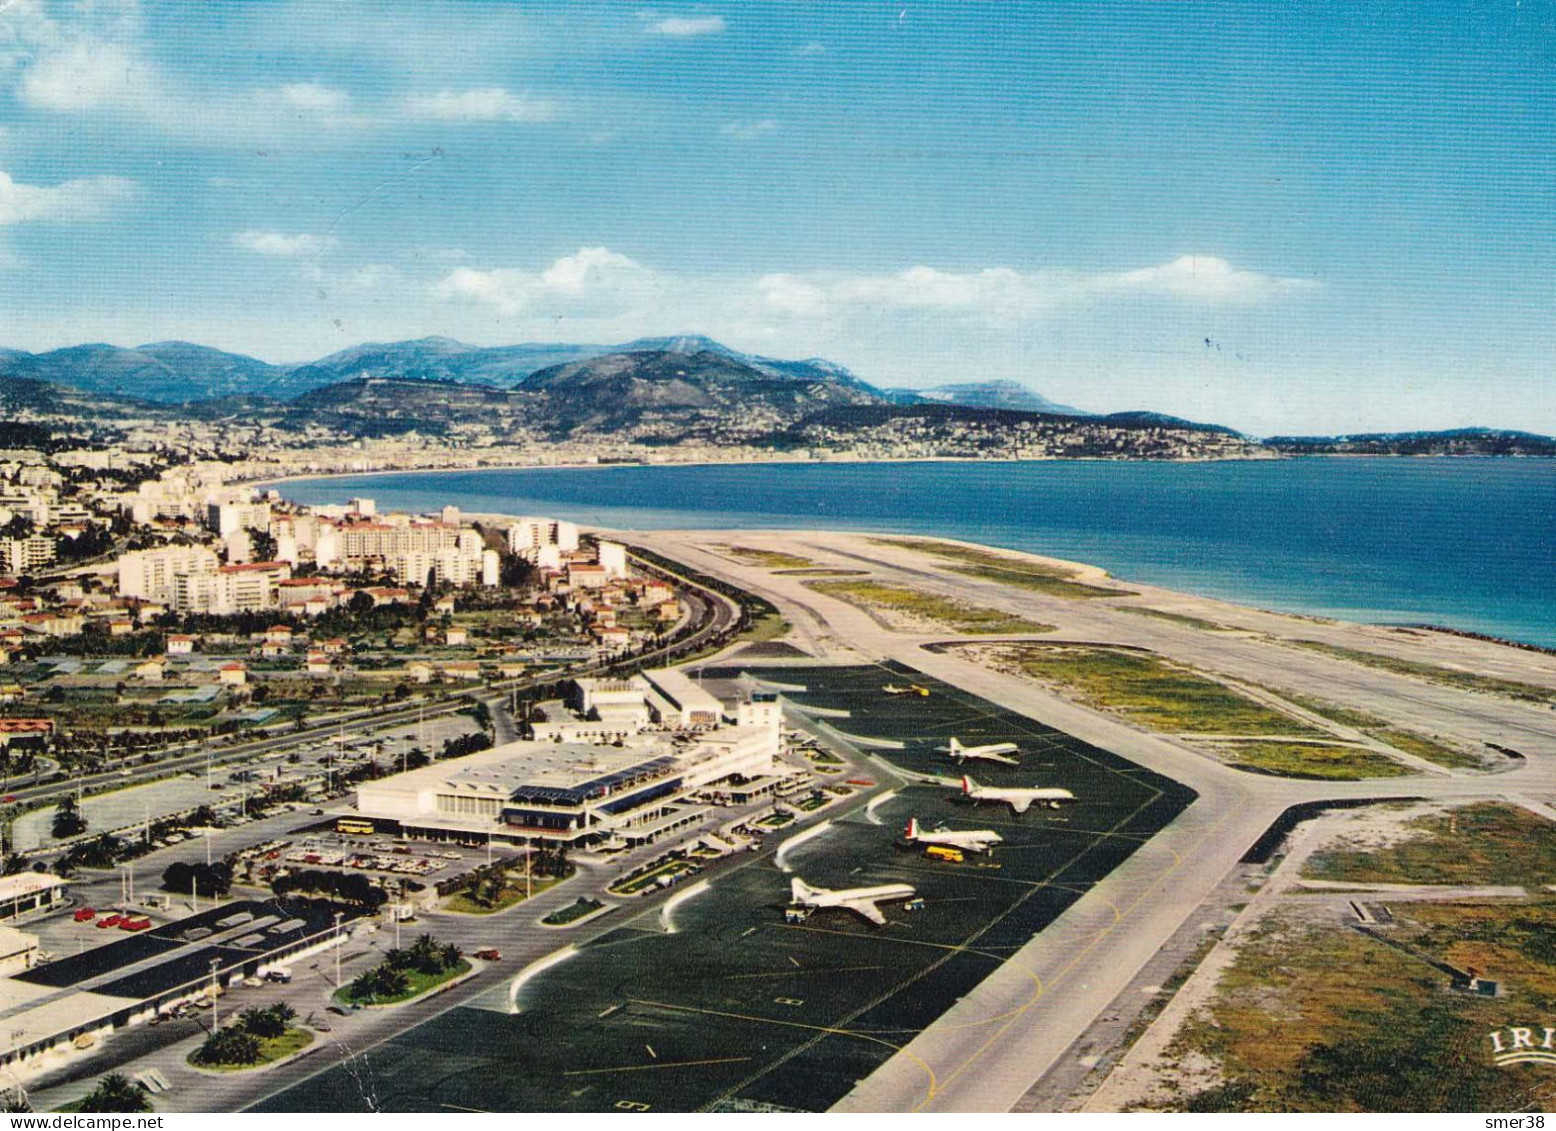 06 - NICE - Aéroport De Nice Cote-d'azur, La Baie Des Anges... - Transport Aérien - Aéroport